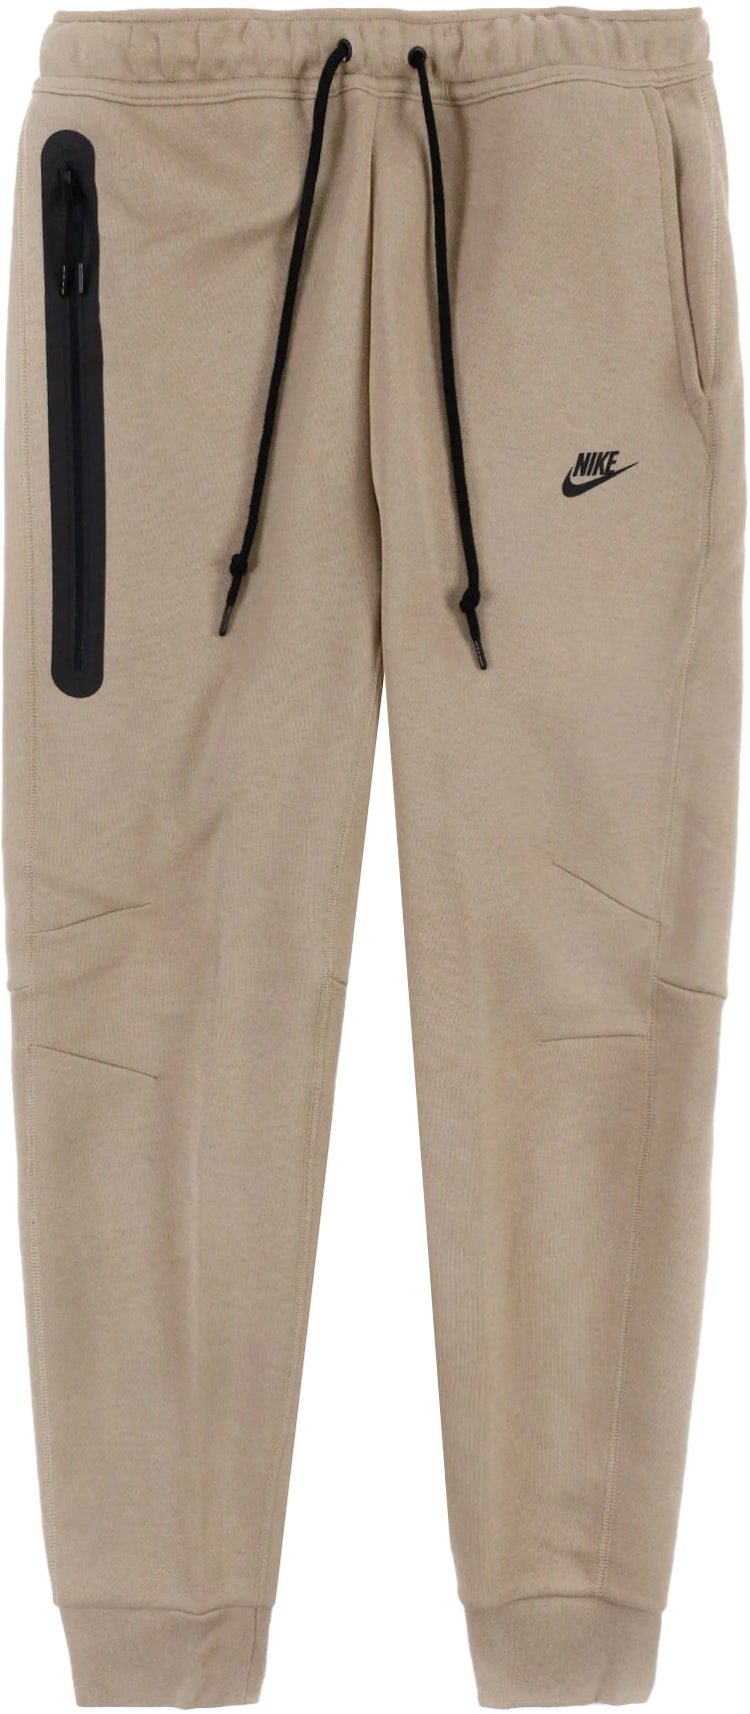 Doodskaak meten bewondering Nike Sportswear Tech Fleece Joggers Khaki/Black - FW22 Men's - US